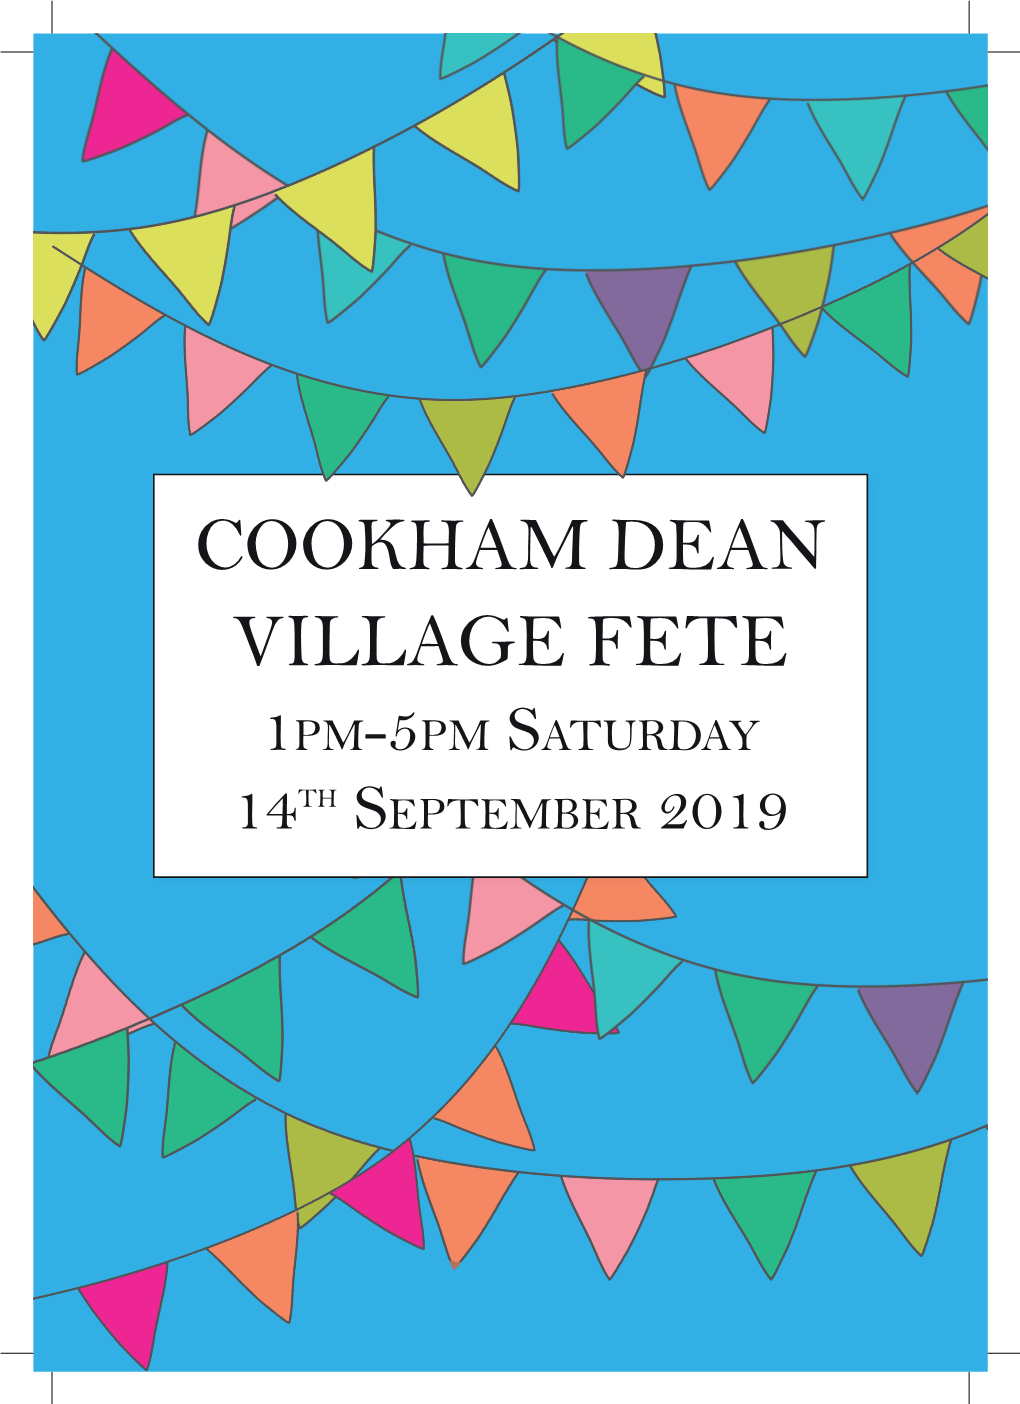 Cookham Dean Village Fete